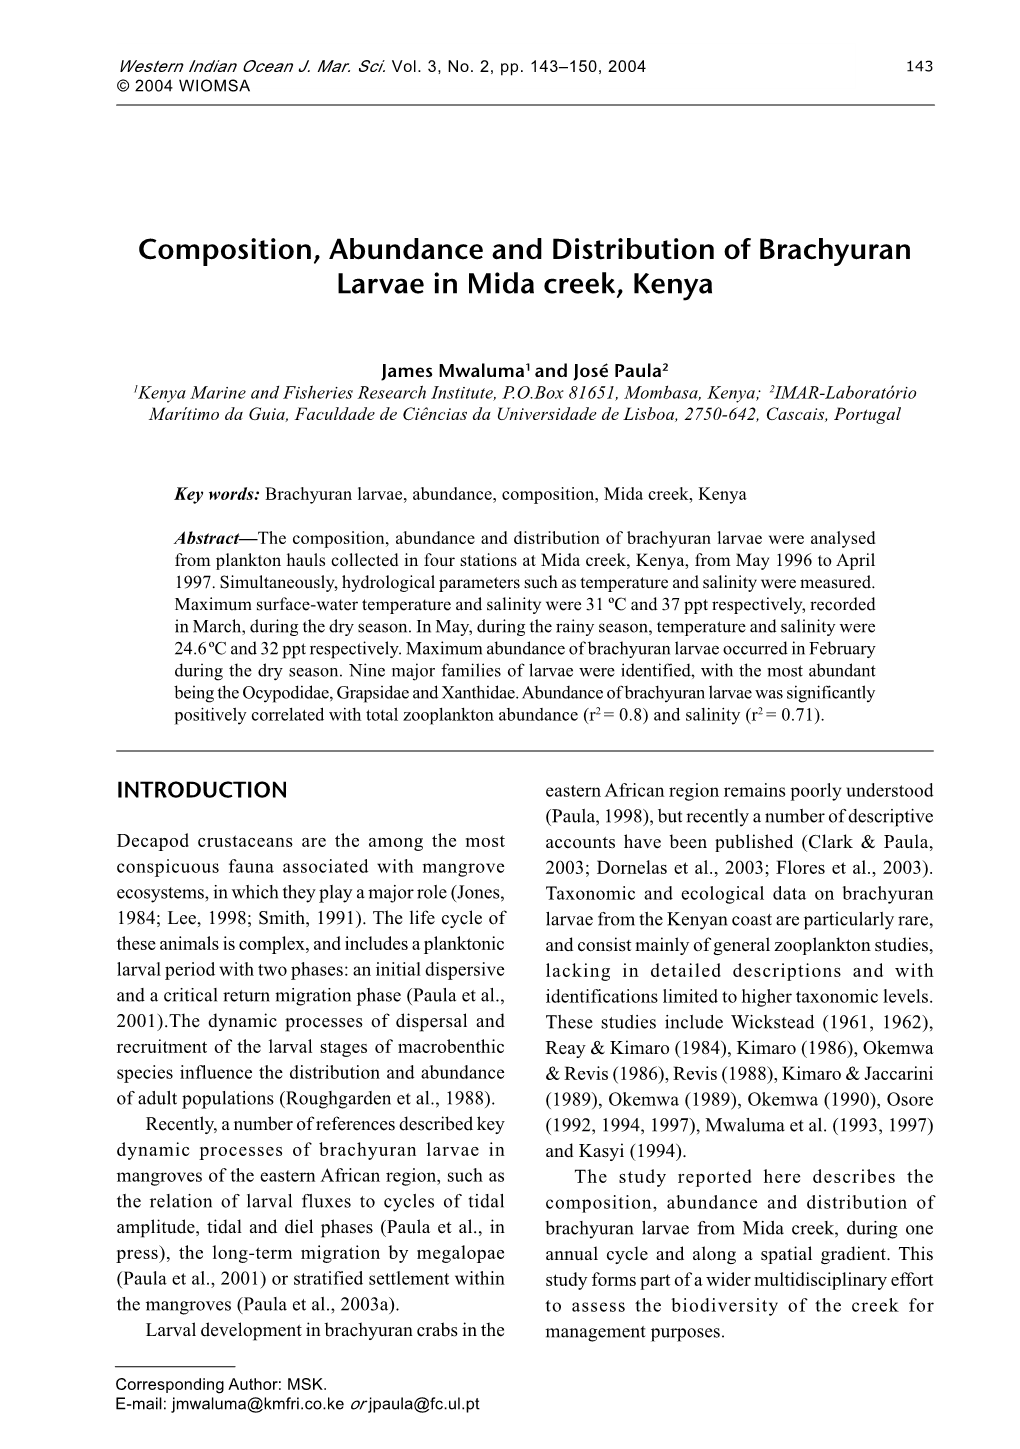 Composition, Abundance and Distribution of Brachyuran Larvae in Mida Creek, Kenya